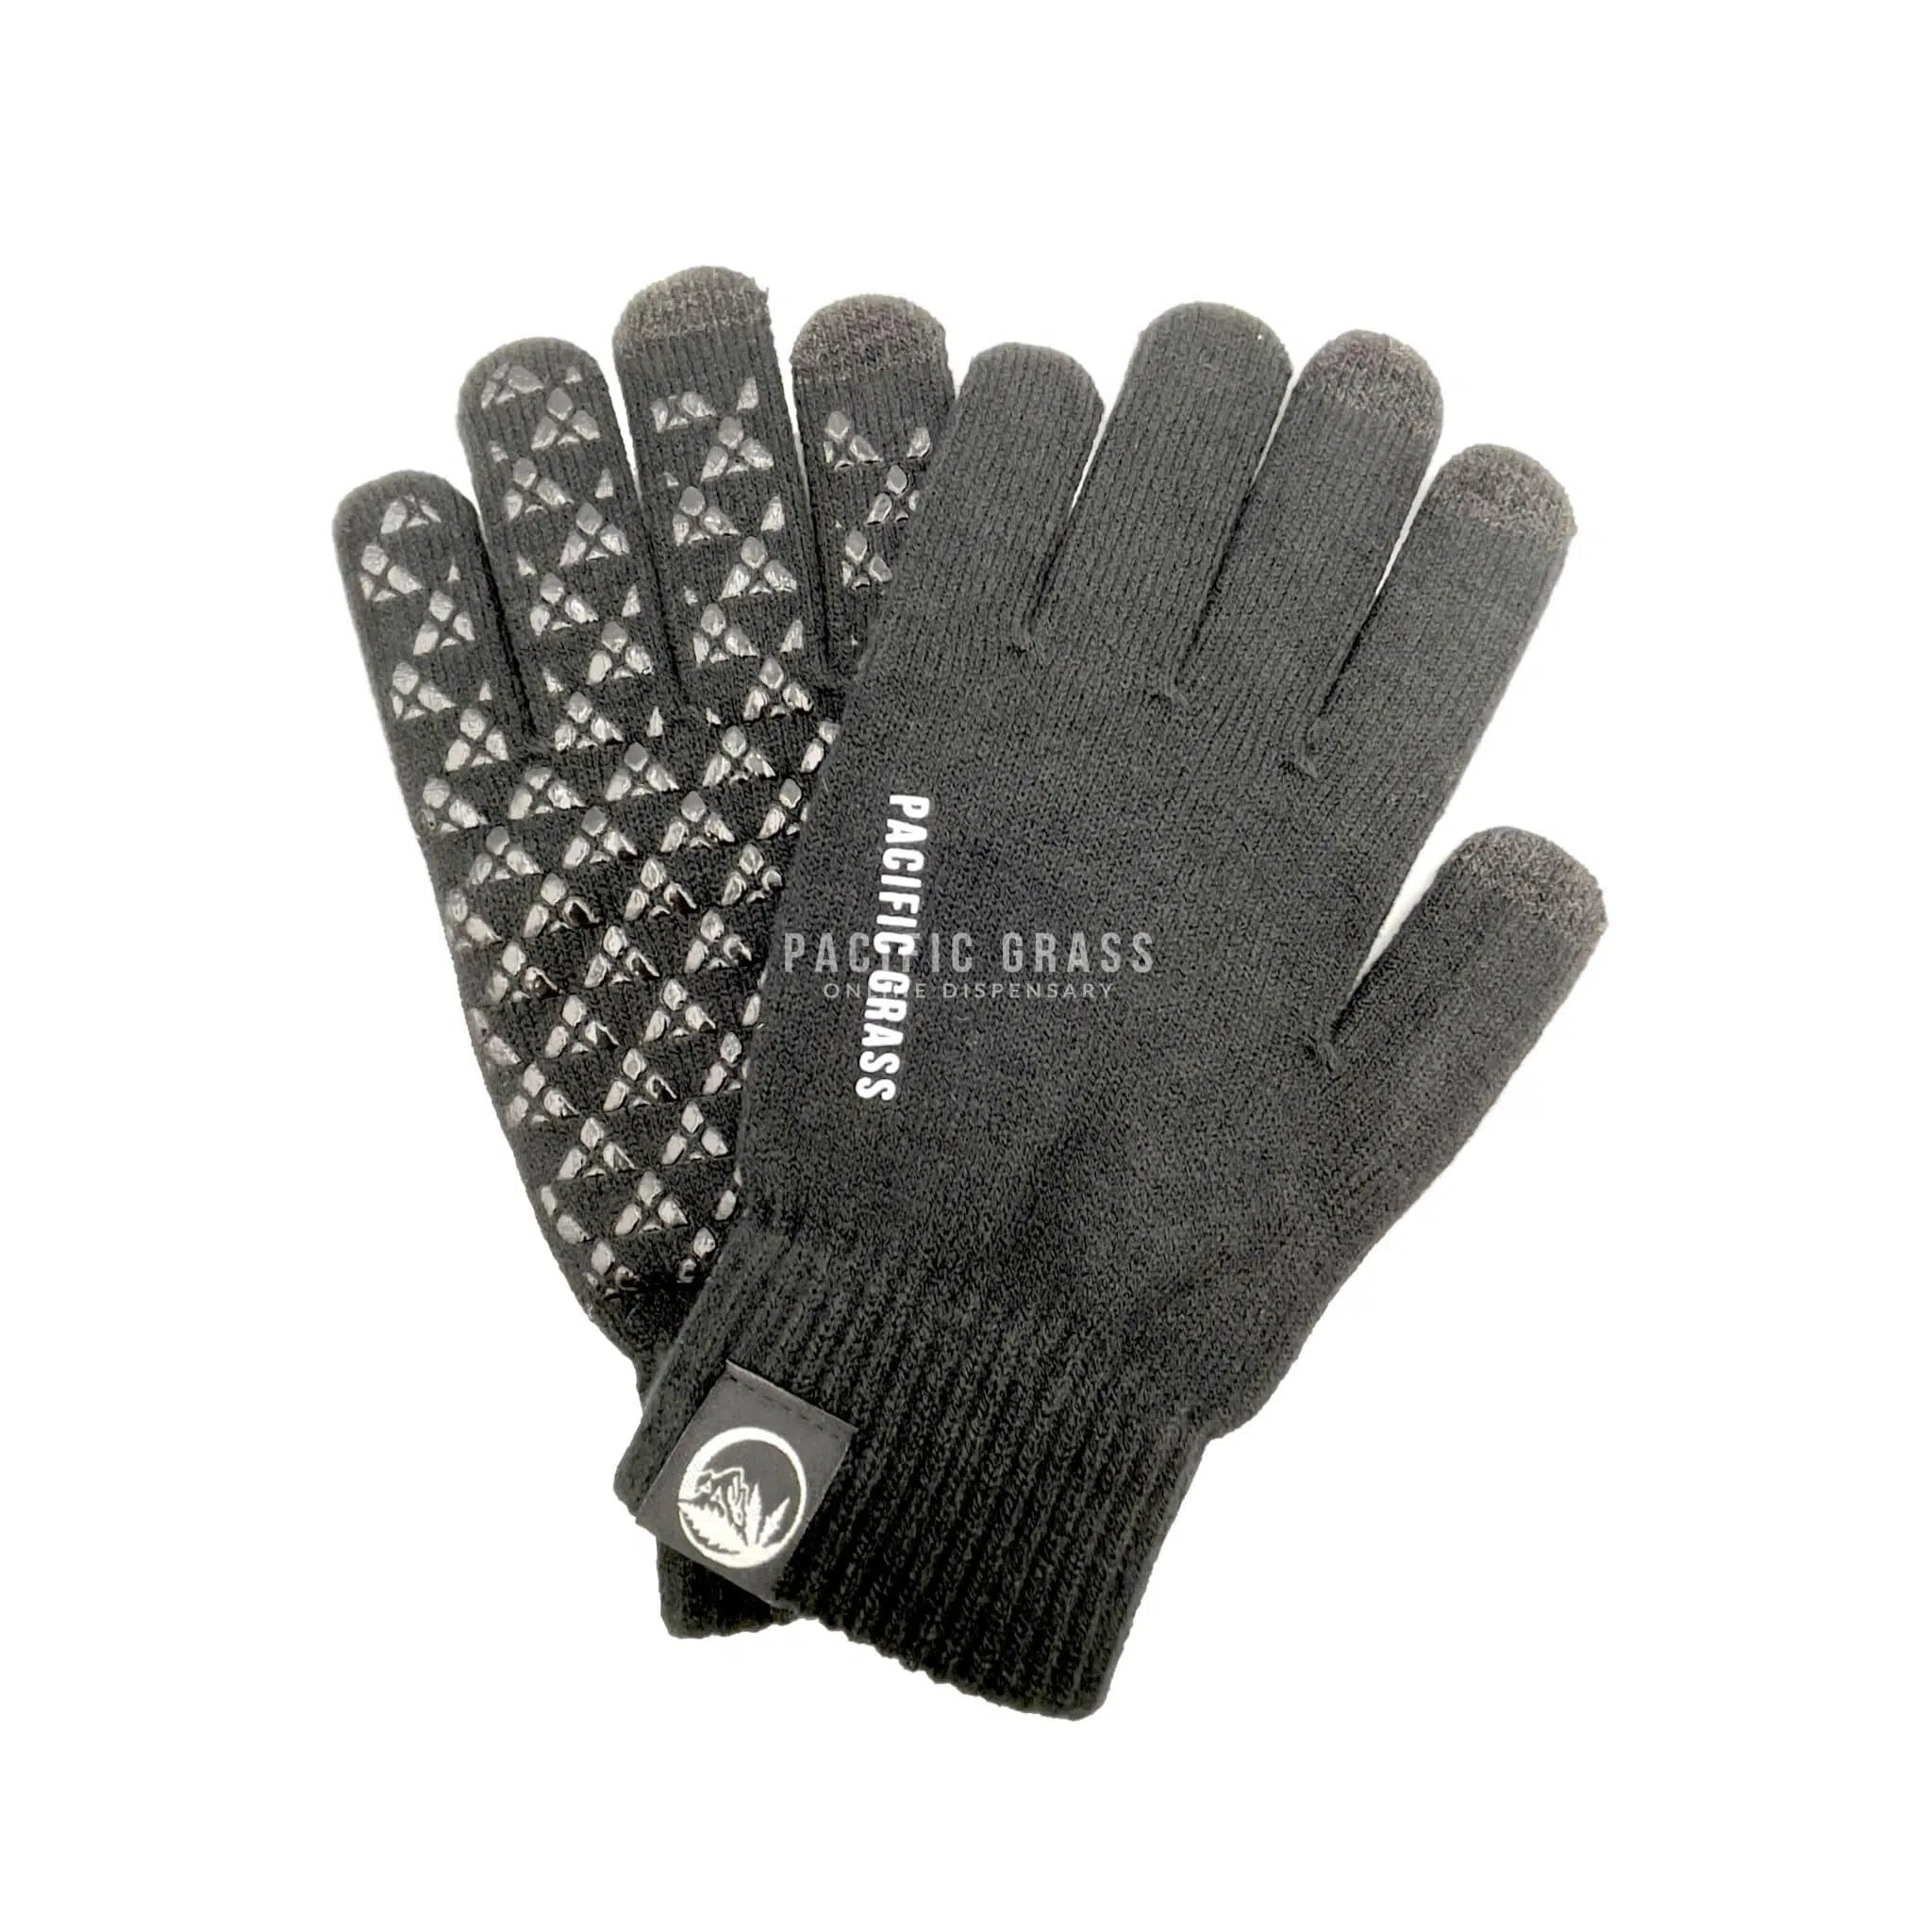 PG Gloves Black